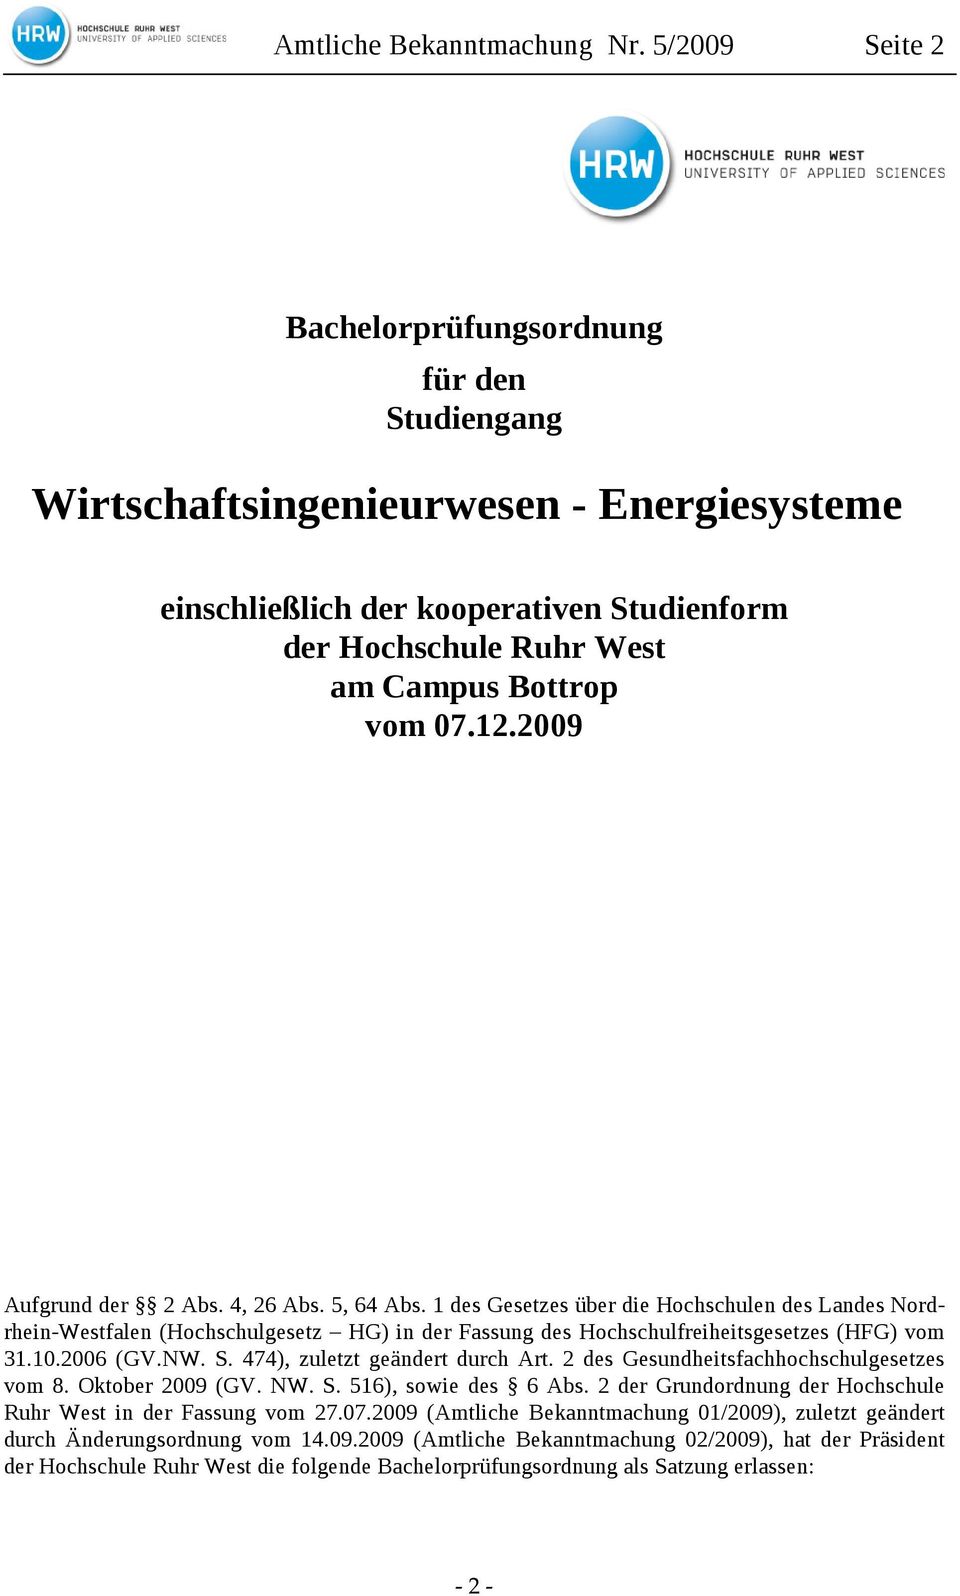 2009 Aufgrund der 2 Abs. 4, 26 Abs. 5, 64 Abs. 1 des Gesetzes über die Hochschulen des Landes Nordrhein-Westfalen (Hochschulgesetz HG) in der Fassung des Hochschulfreiheitsgesetzes (HFG) vom 31.10.